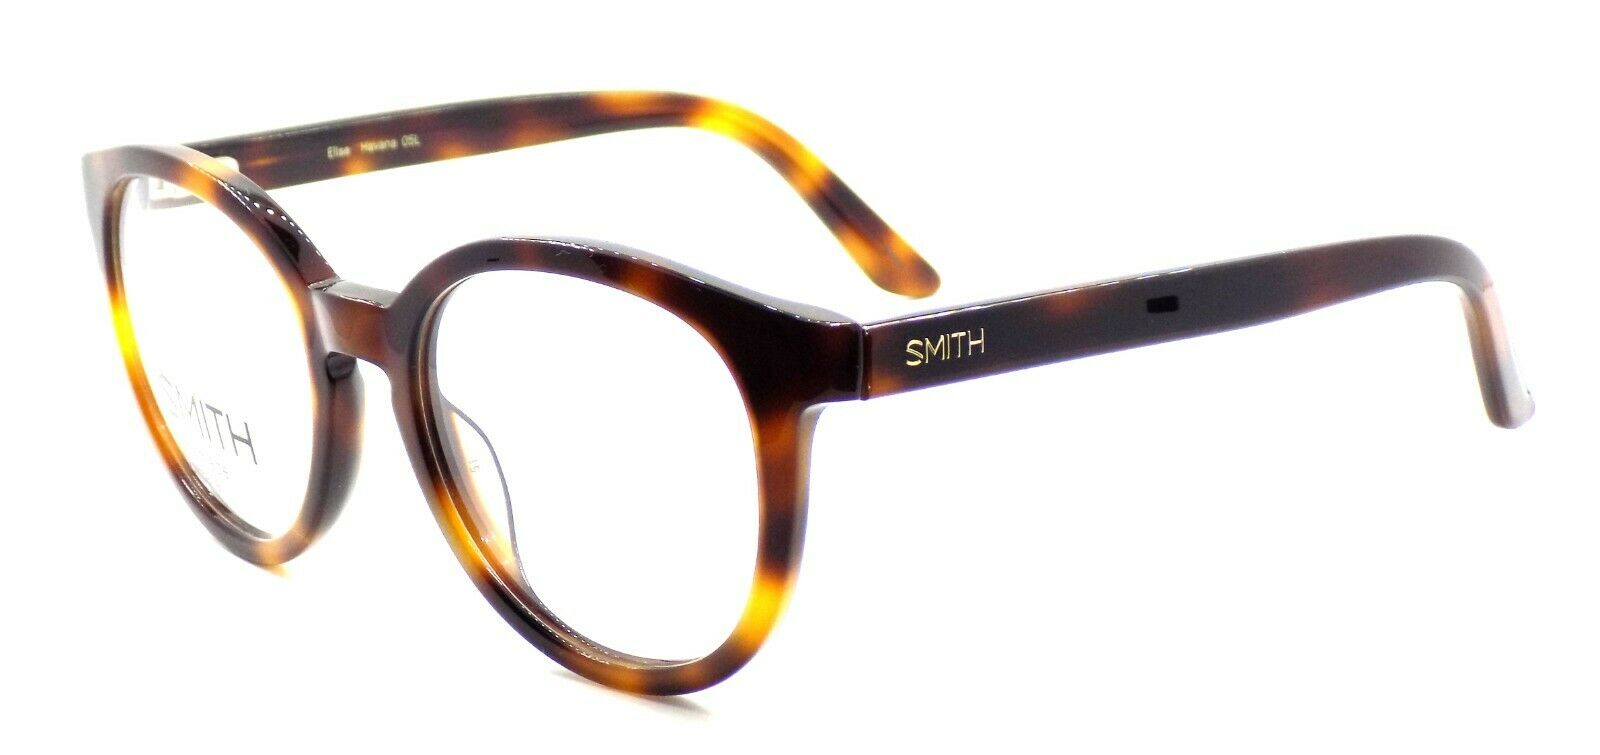 1-SMITH Optics Elise 05L Women's Eyeglasses Frames 51-20-135 Havana + CASE-762753559586-IKSpecs